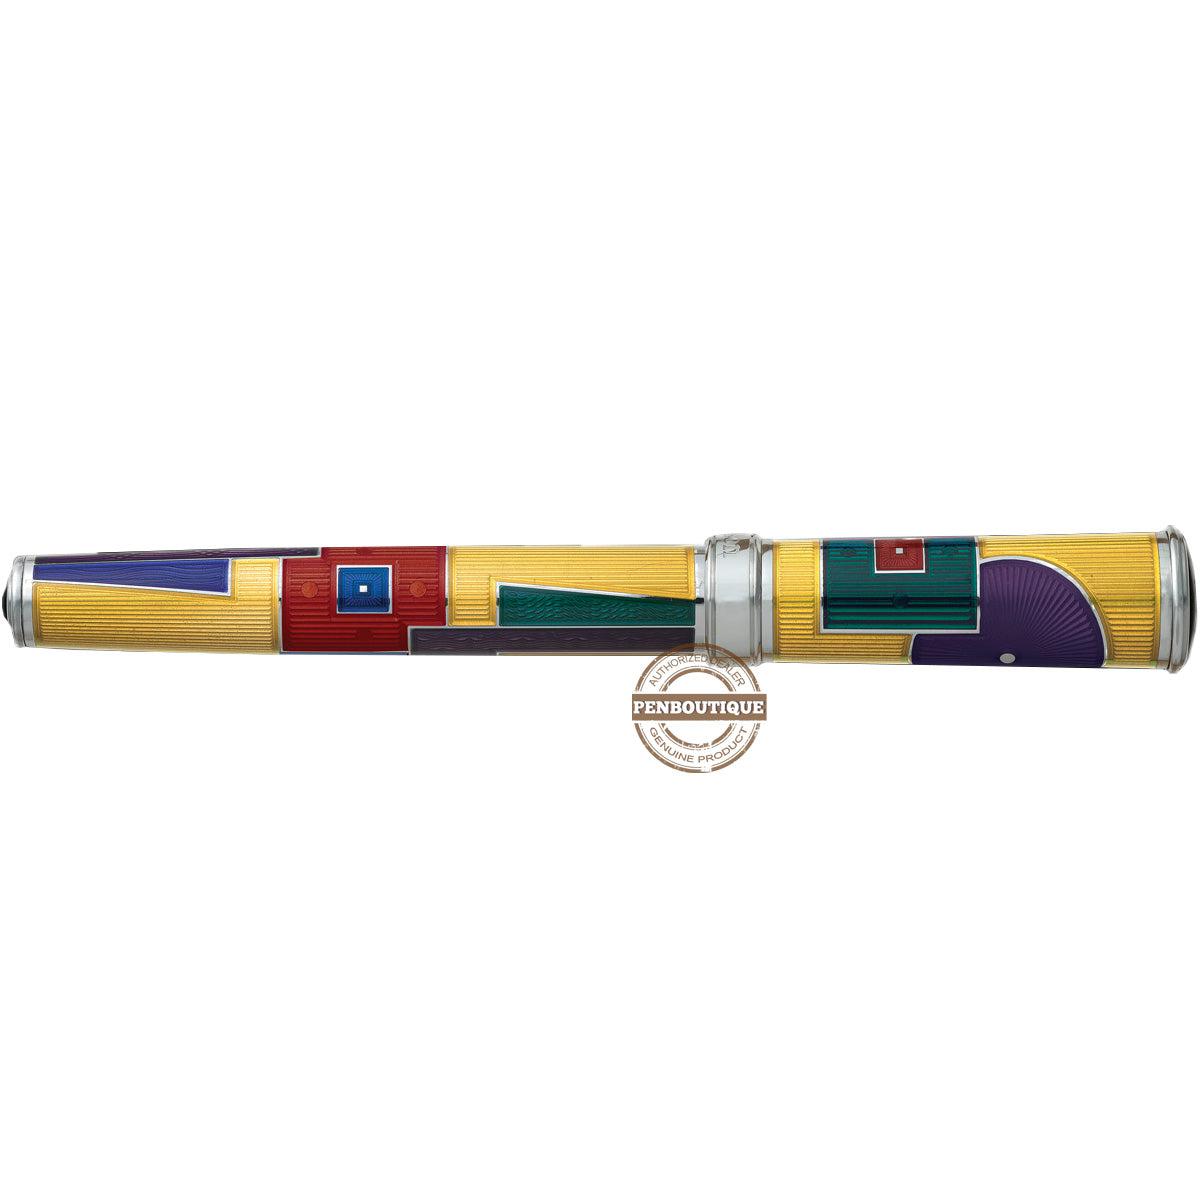 David Oscarson 15th Anniversary/American Art Deco Fountain Pen -Translucent Amber with Multi-colored Enamel-Pen Boutique Ltd